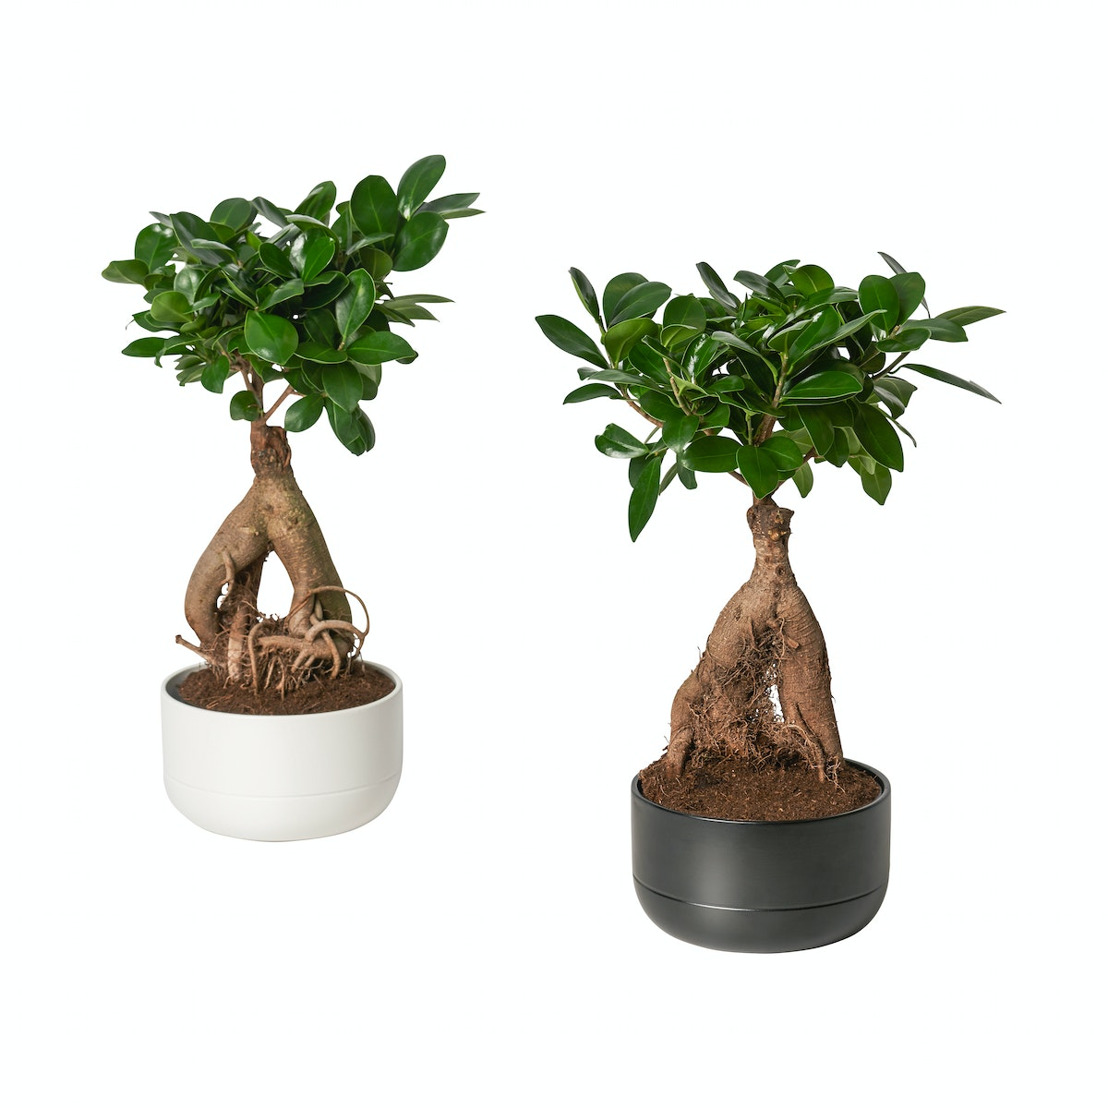 IKEA rappelle la plante FICUS Microcarpa Ginseng pour la présence d’un nématode (ver)